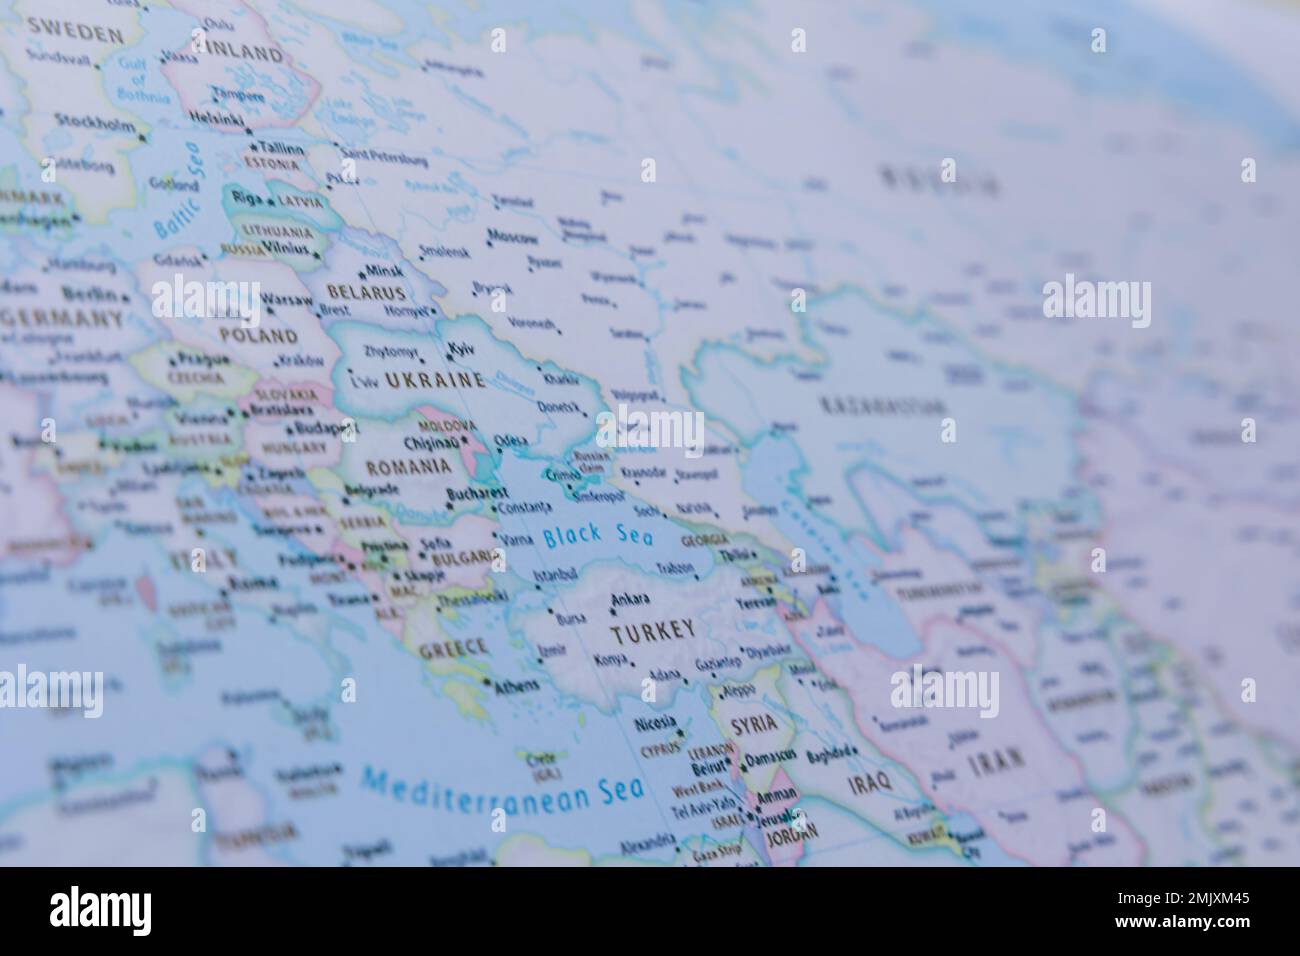 Mappa dei Balcani e dell'Europa orientale in primo piano. Concetto politico e diplomatico foto. Conflitto o accordo in Medio Oriente o Europa orientale. Foto Stock